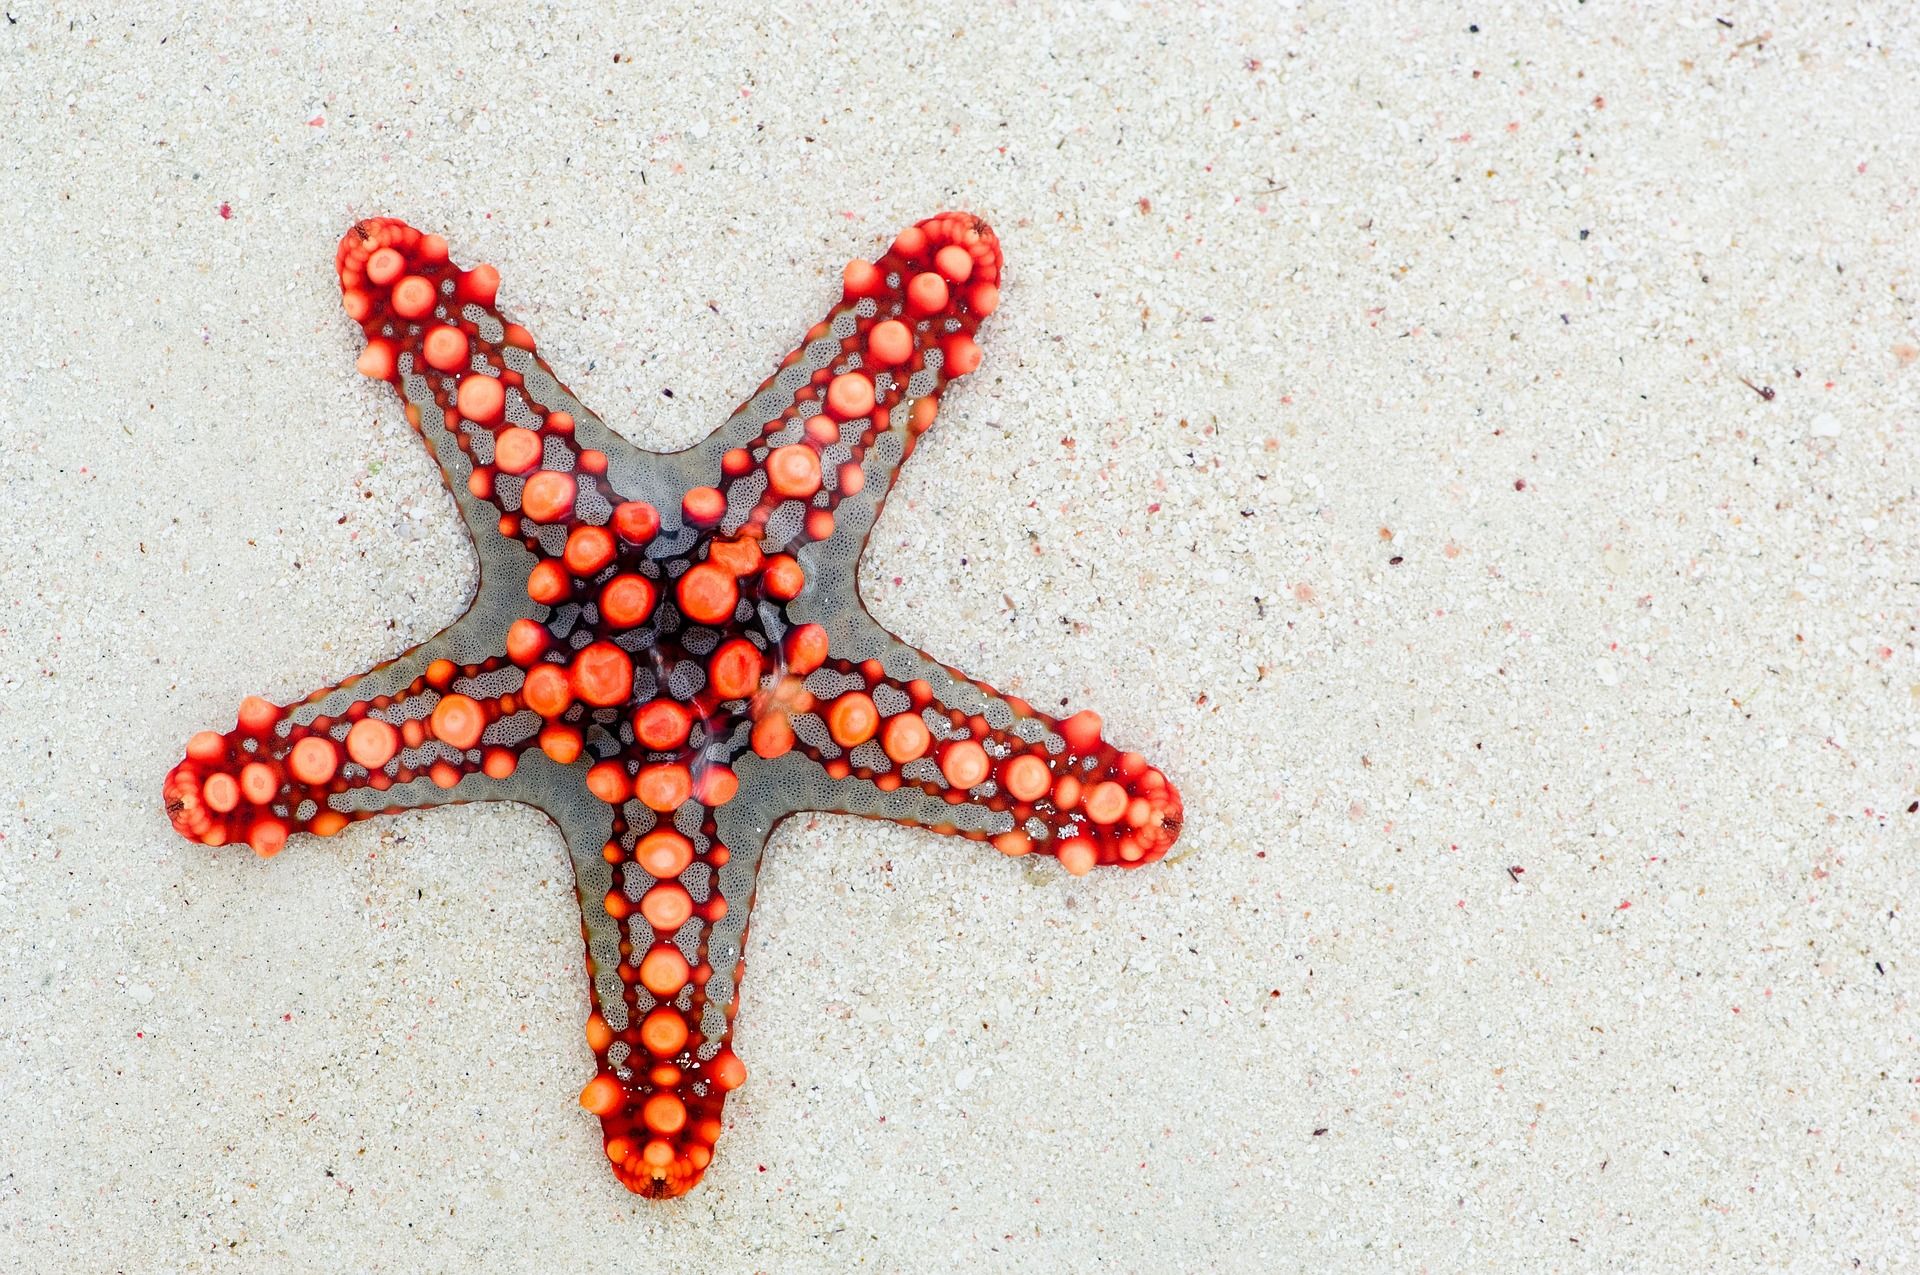 estrella de mar sobre arena de playa